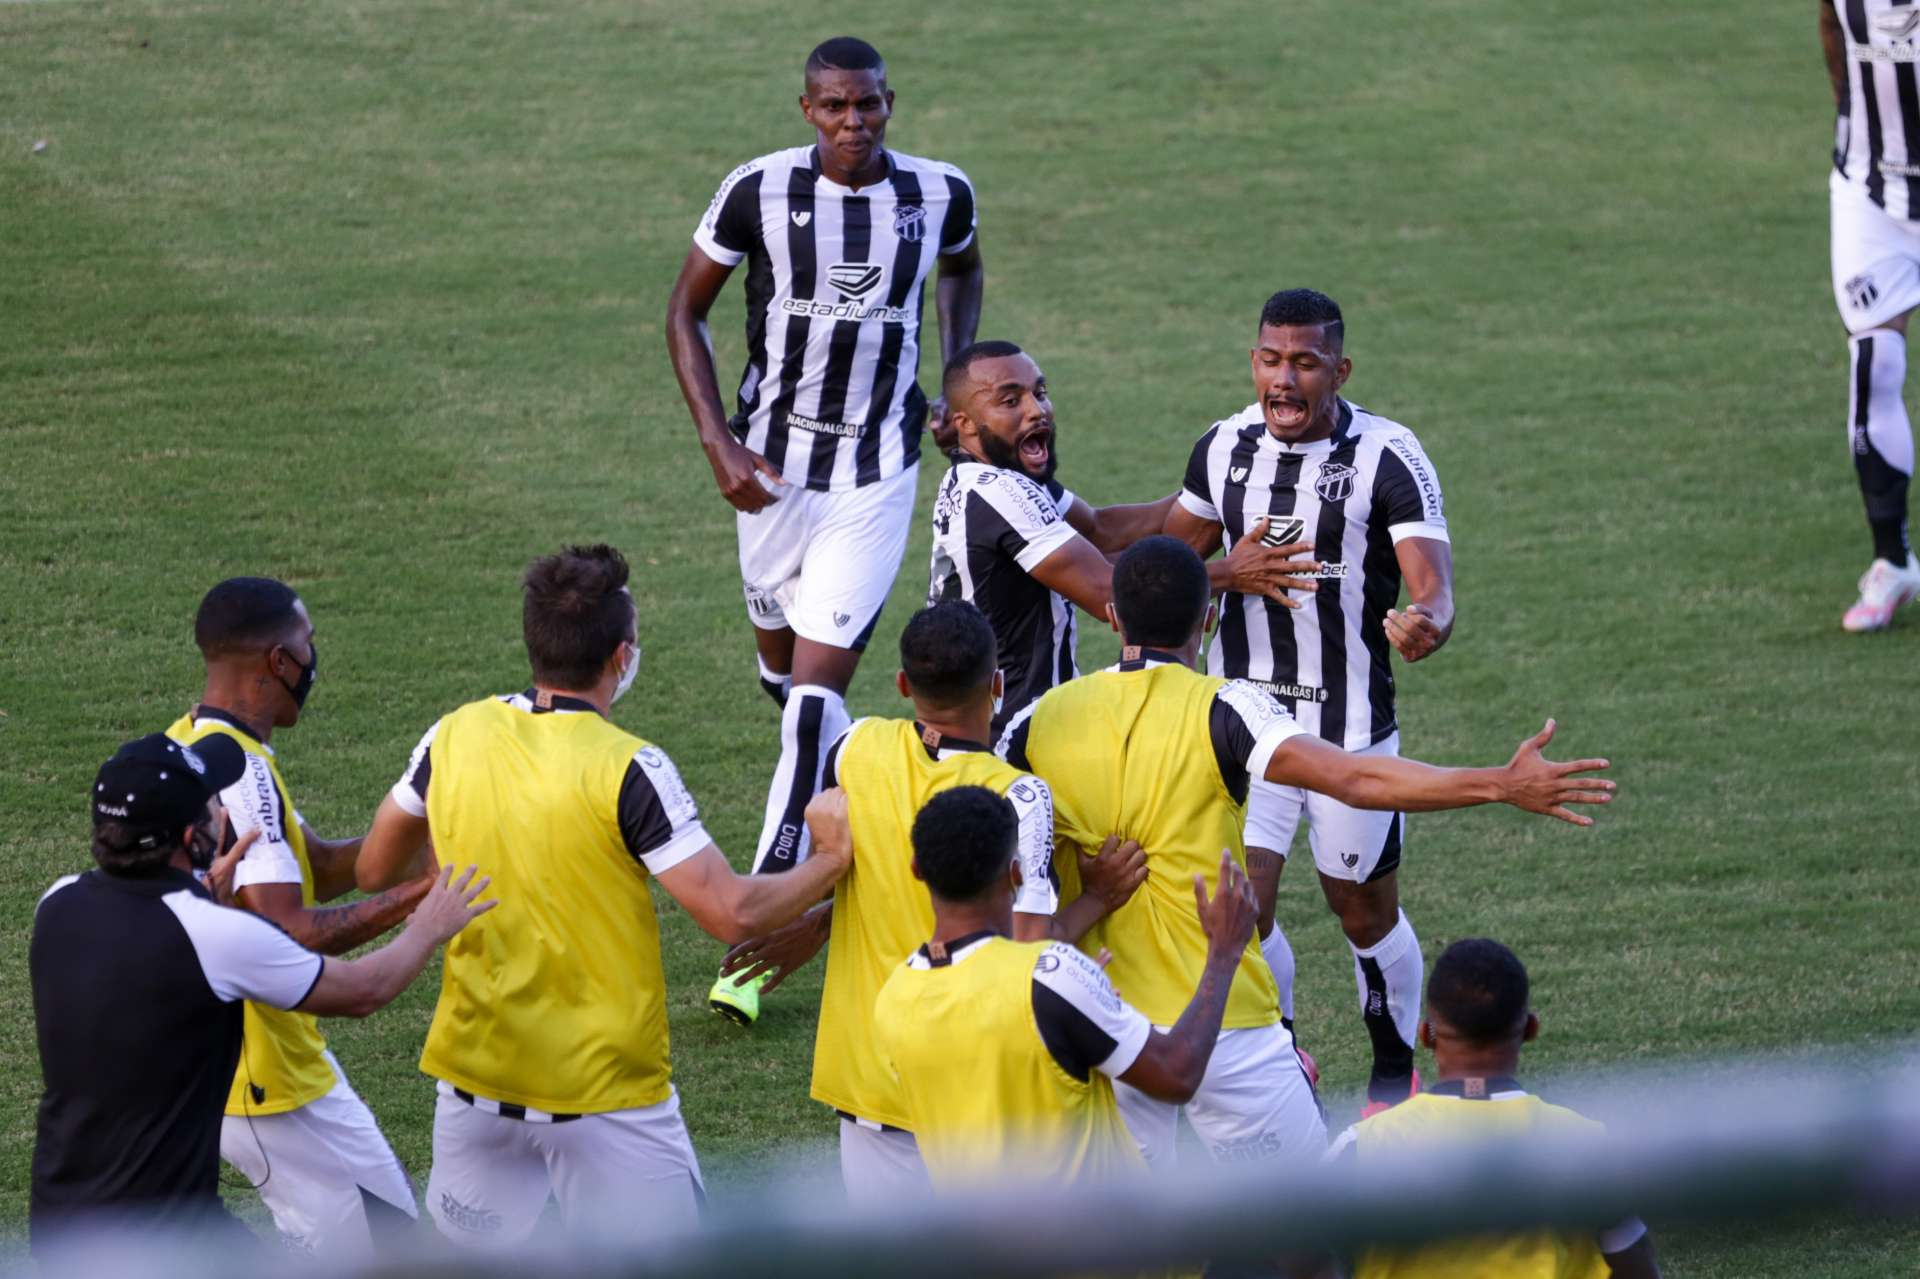 Ceará e Bahia fizeram a primeira partida da final da Copa do Nordeste, neste sábado, 1º, em Pituaçu, em Salvador. Elenco alvinegro comemora o gol. (Foto: Felipe Santos/cearasc.com)